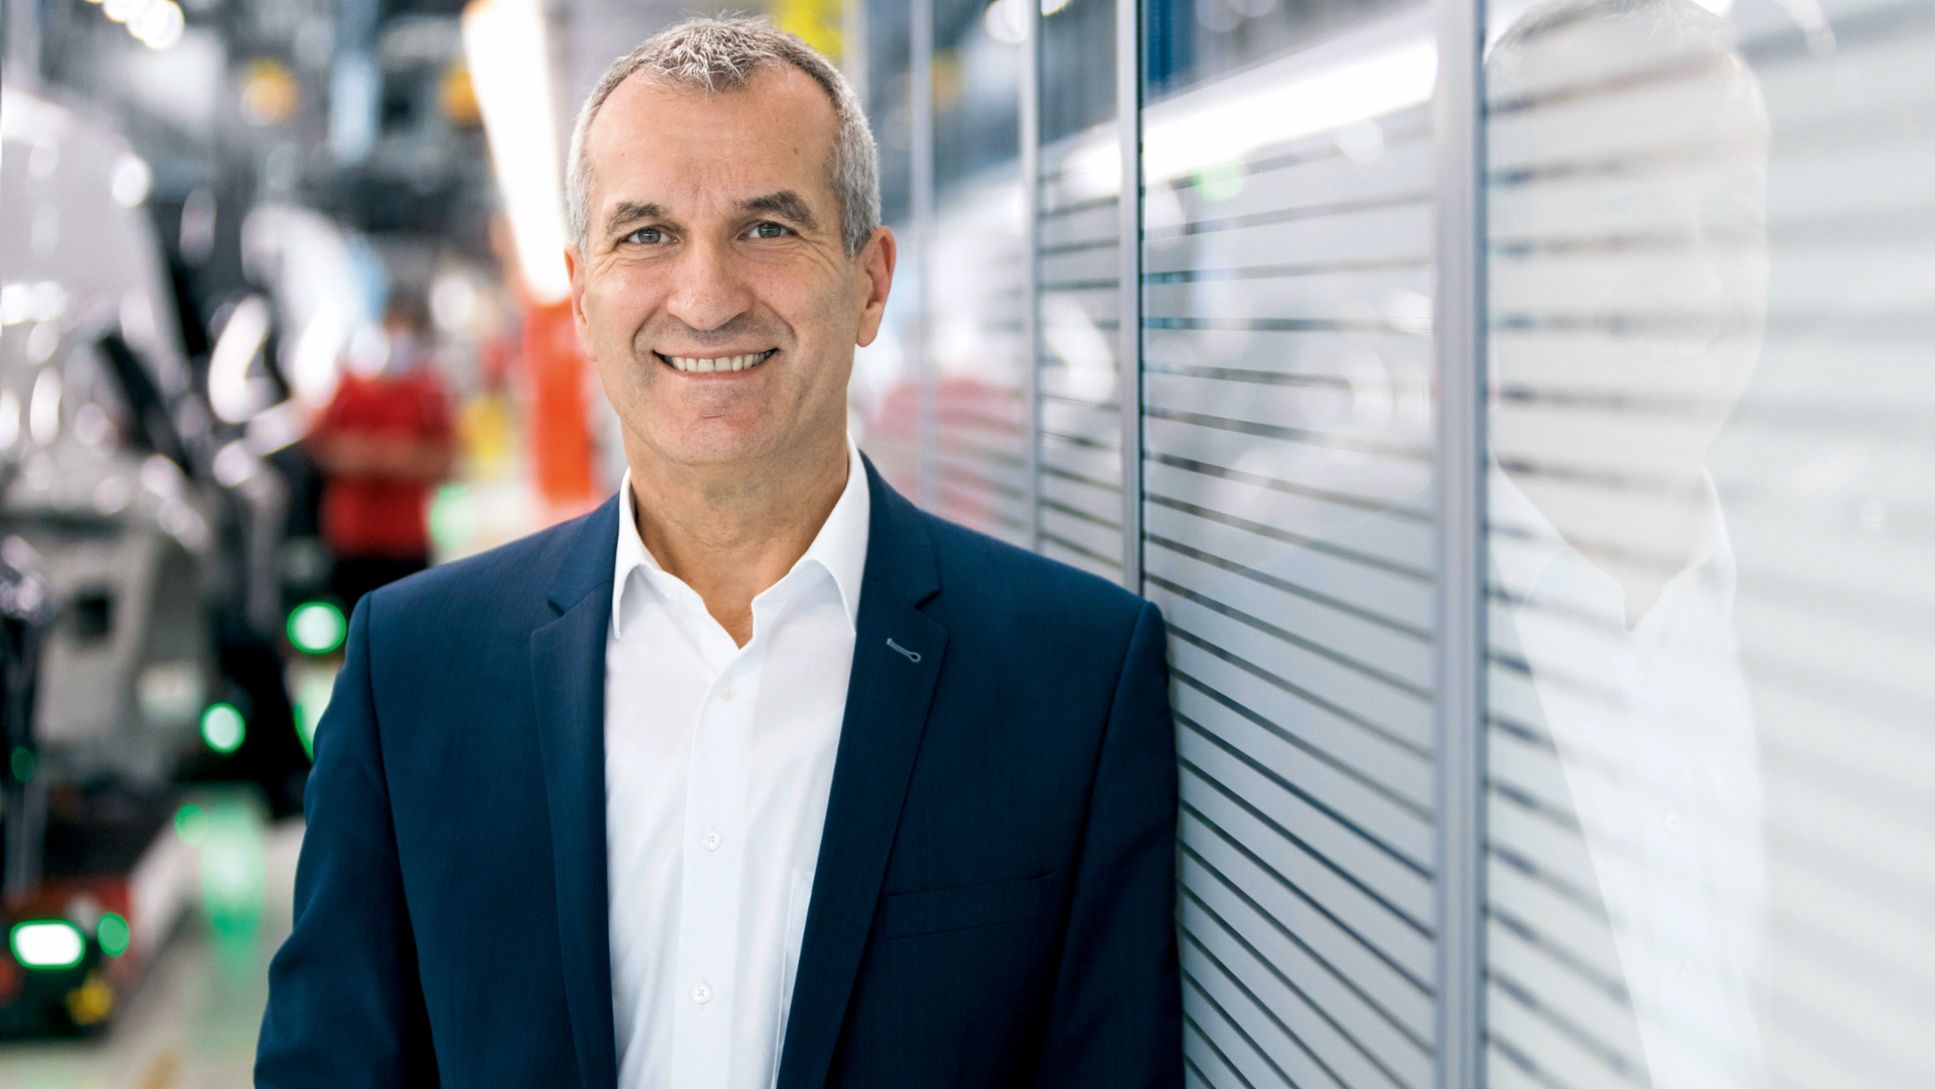  Albrecht Reimold, miembro del Consejo Directivo de Porsche AG responsable de Producción y Logística, 2021, Porsche AG